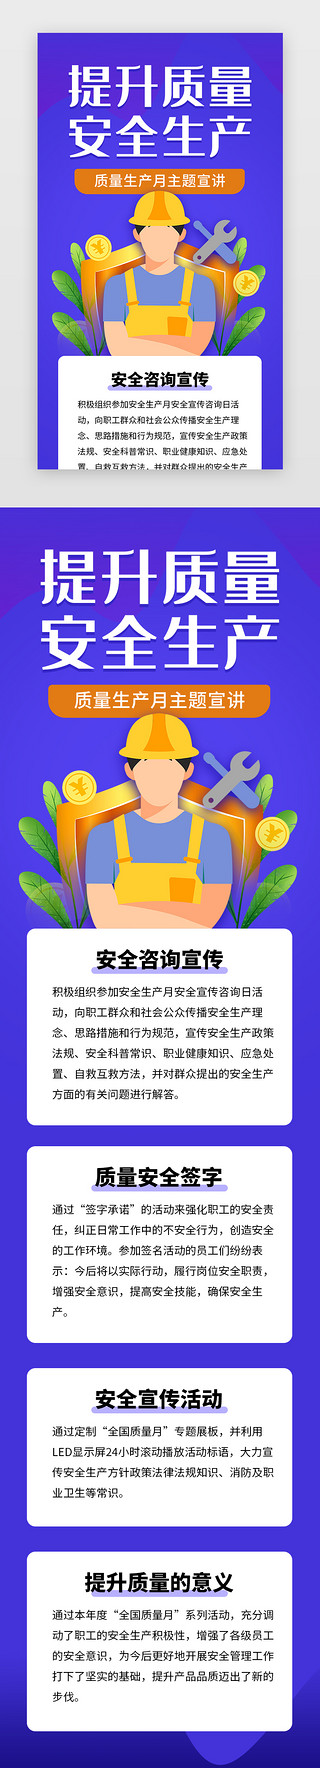 挖矿的工人UI设计素材_提升质量安全生产h5立体蓝色工人